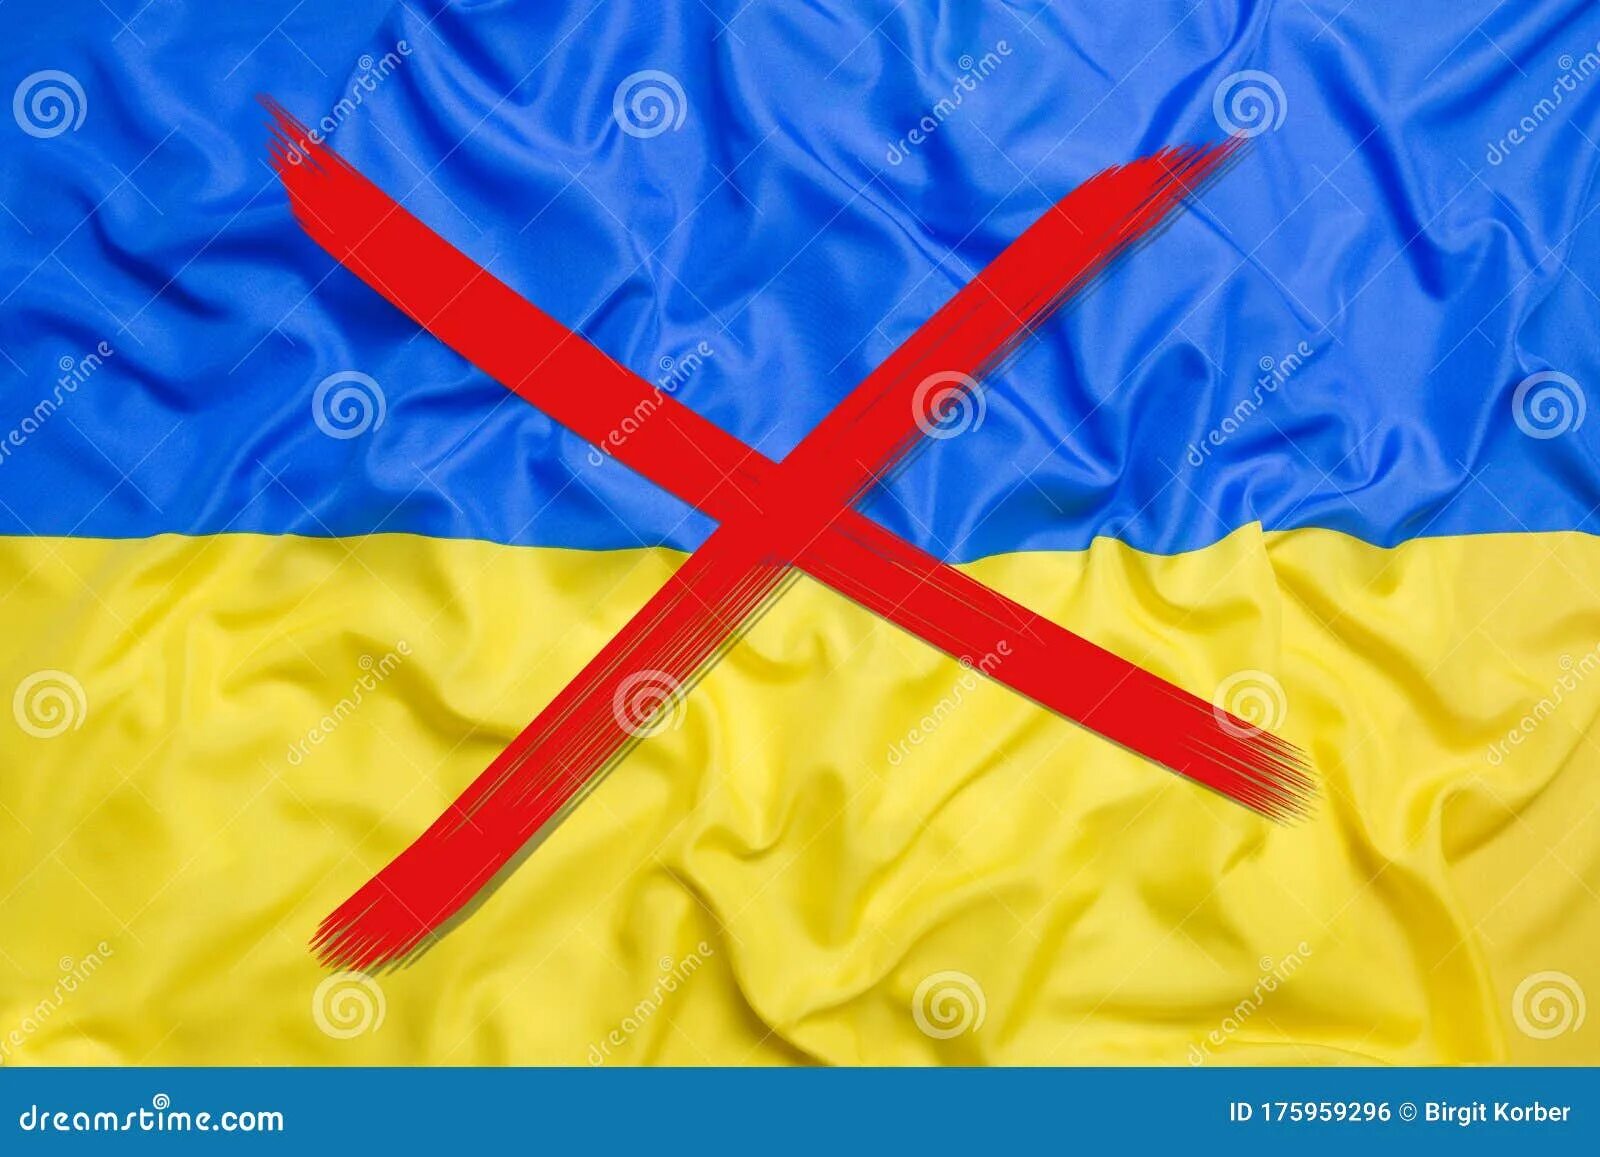 Ваш знамя. Флаг Украины. Перечеркнутый флаг Украины. Перечеркнутый украинский флаг. Украинский флажок.